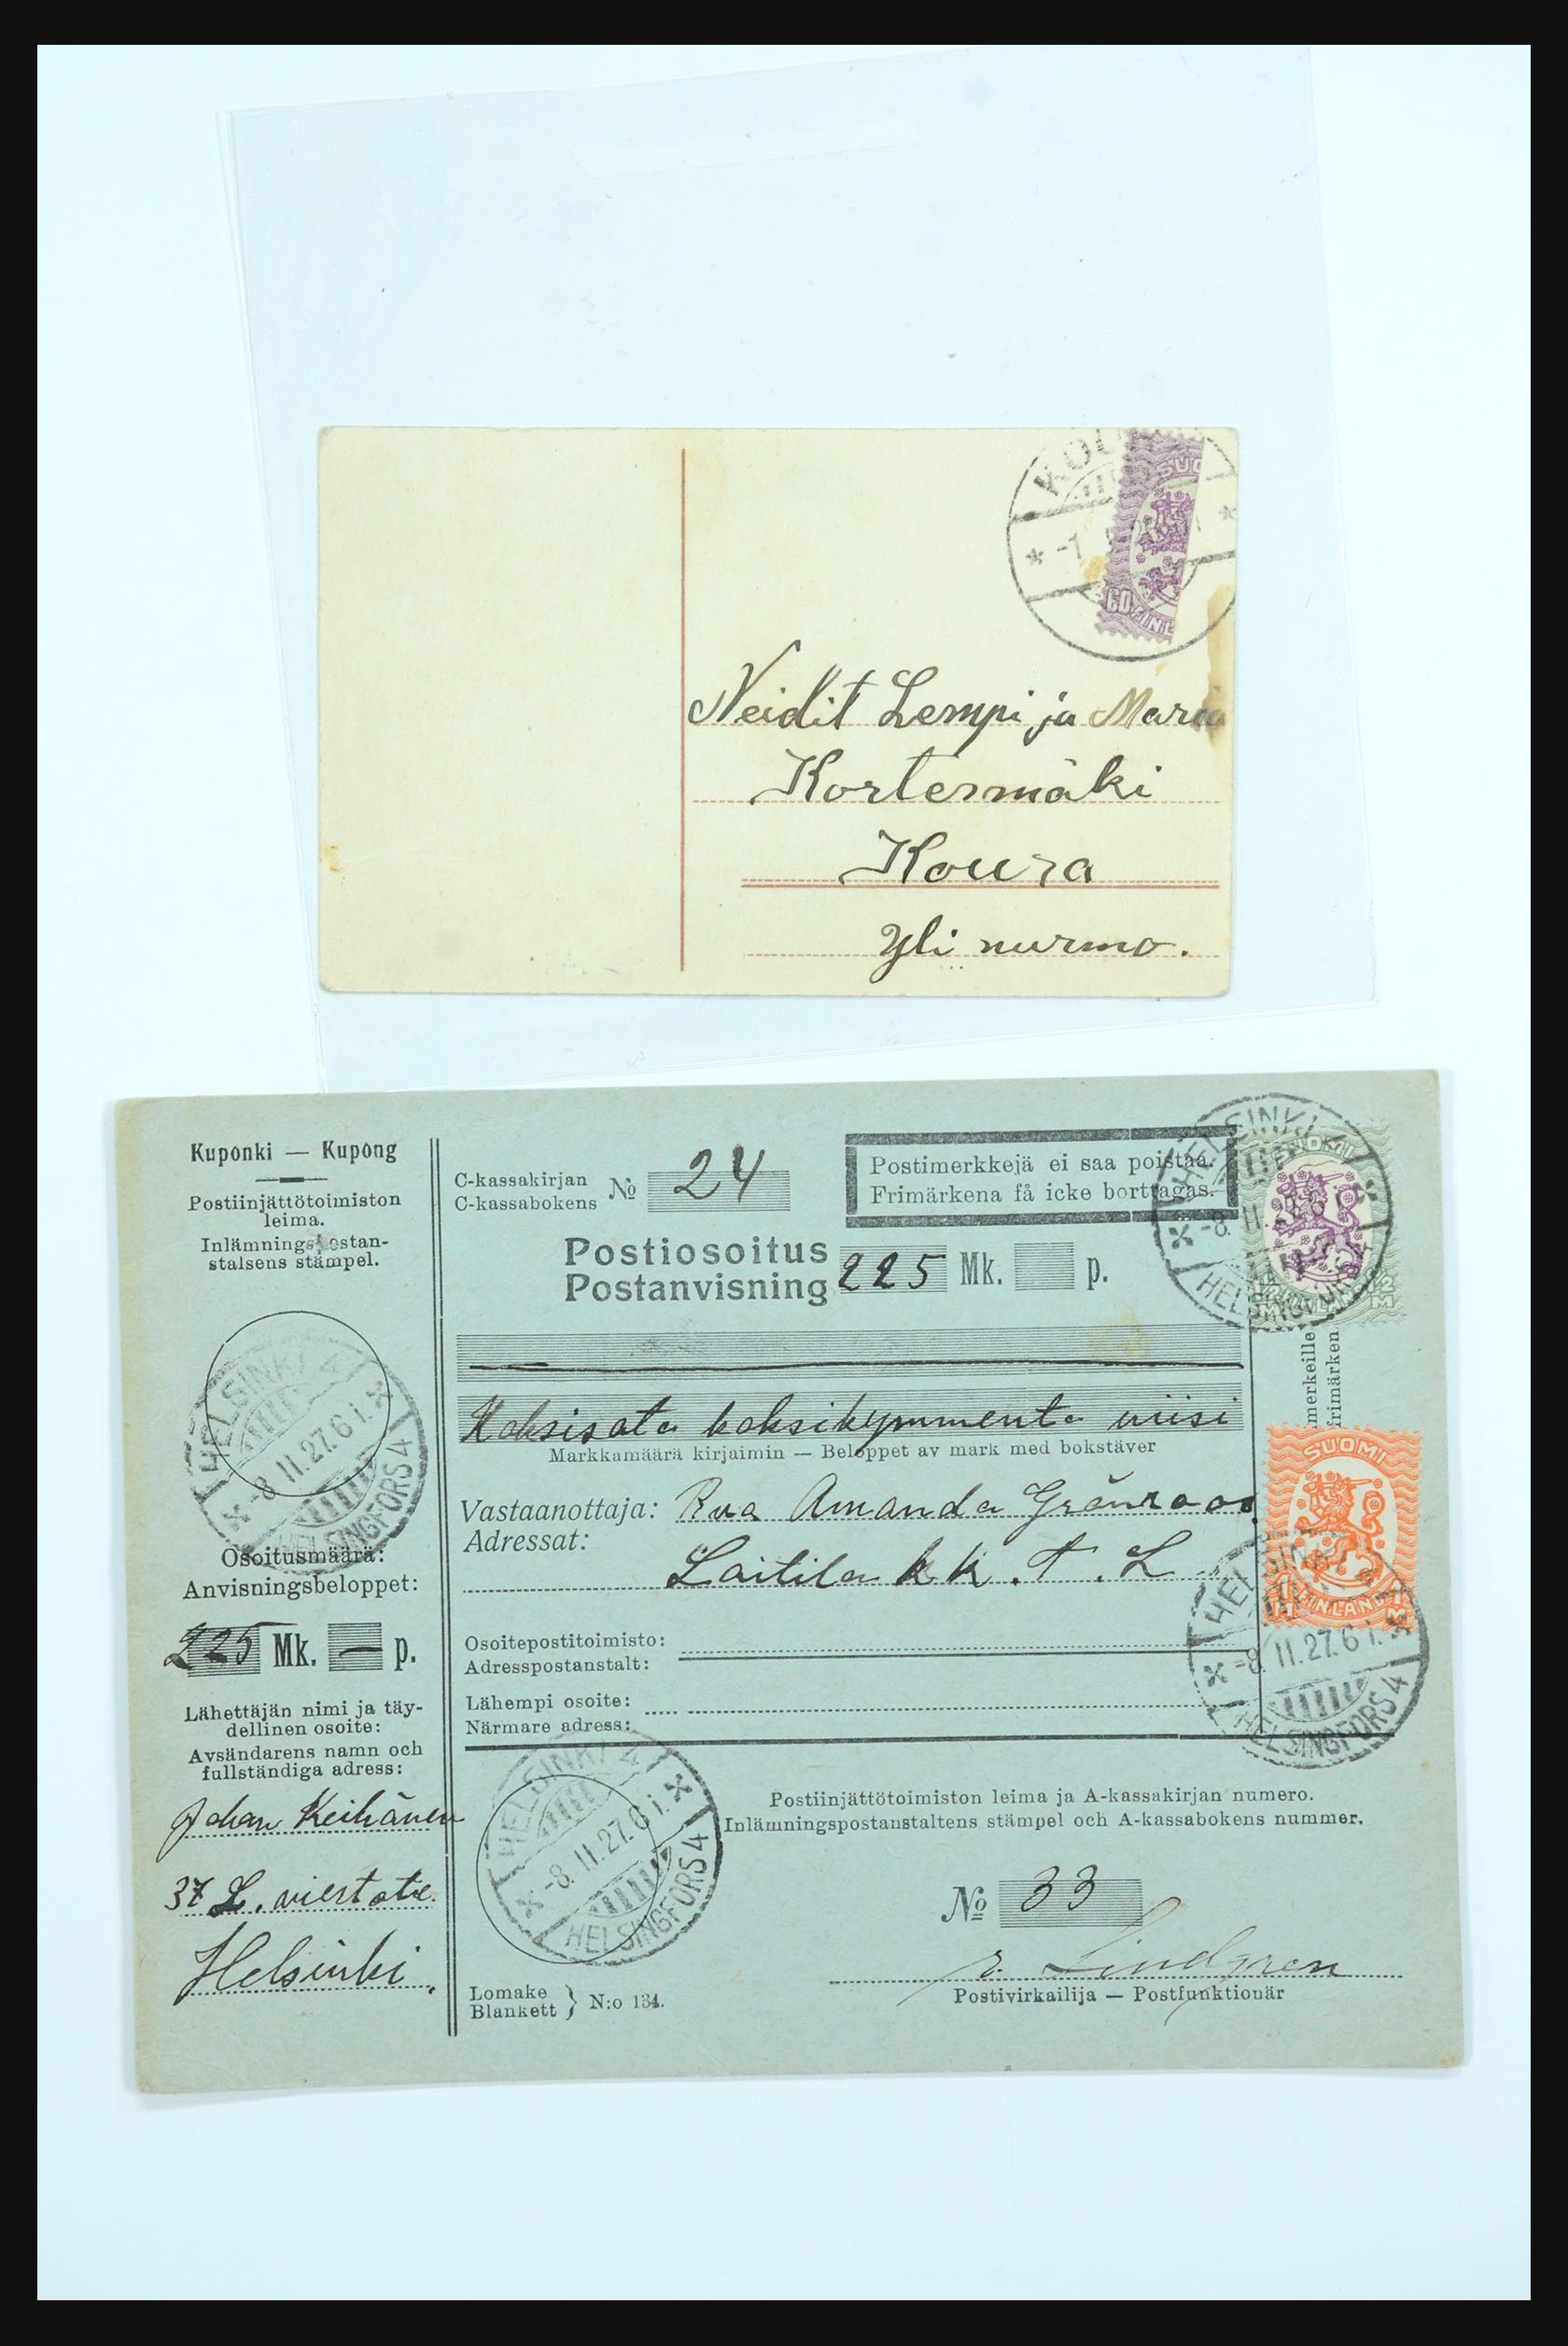 31658 052 - 31658 Finland brieven 1833-1960.